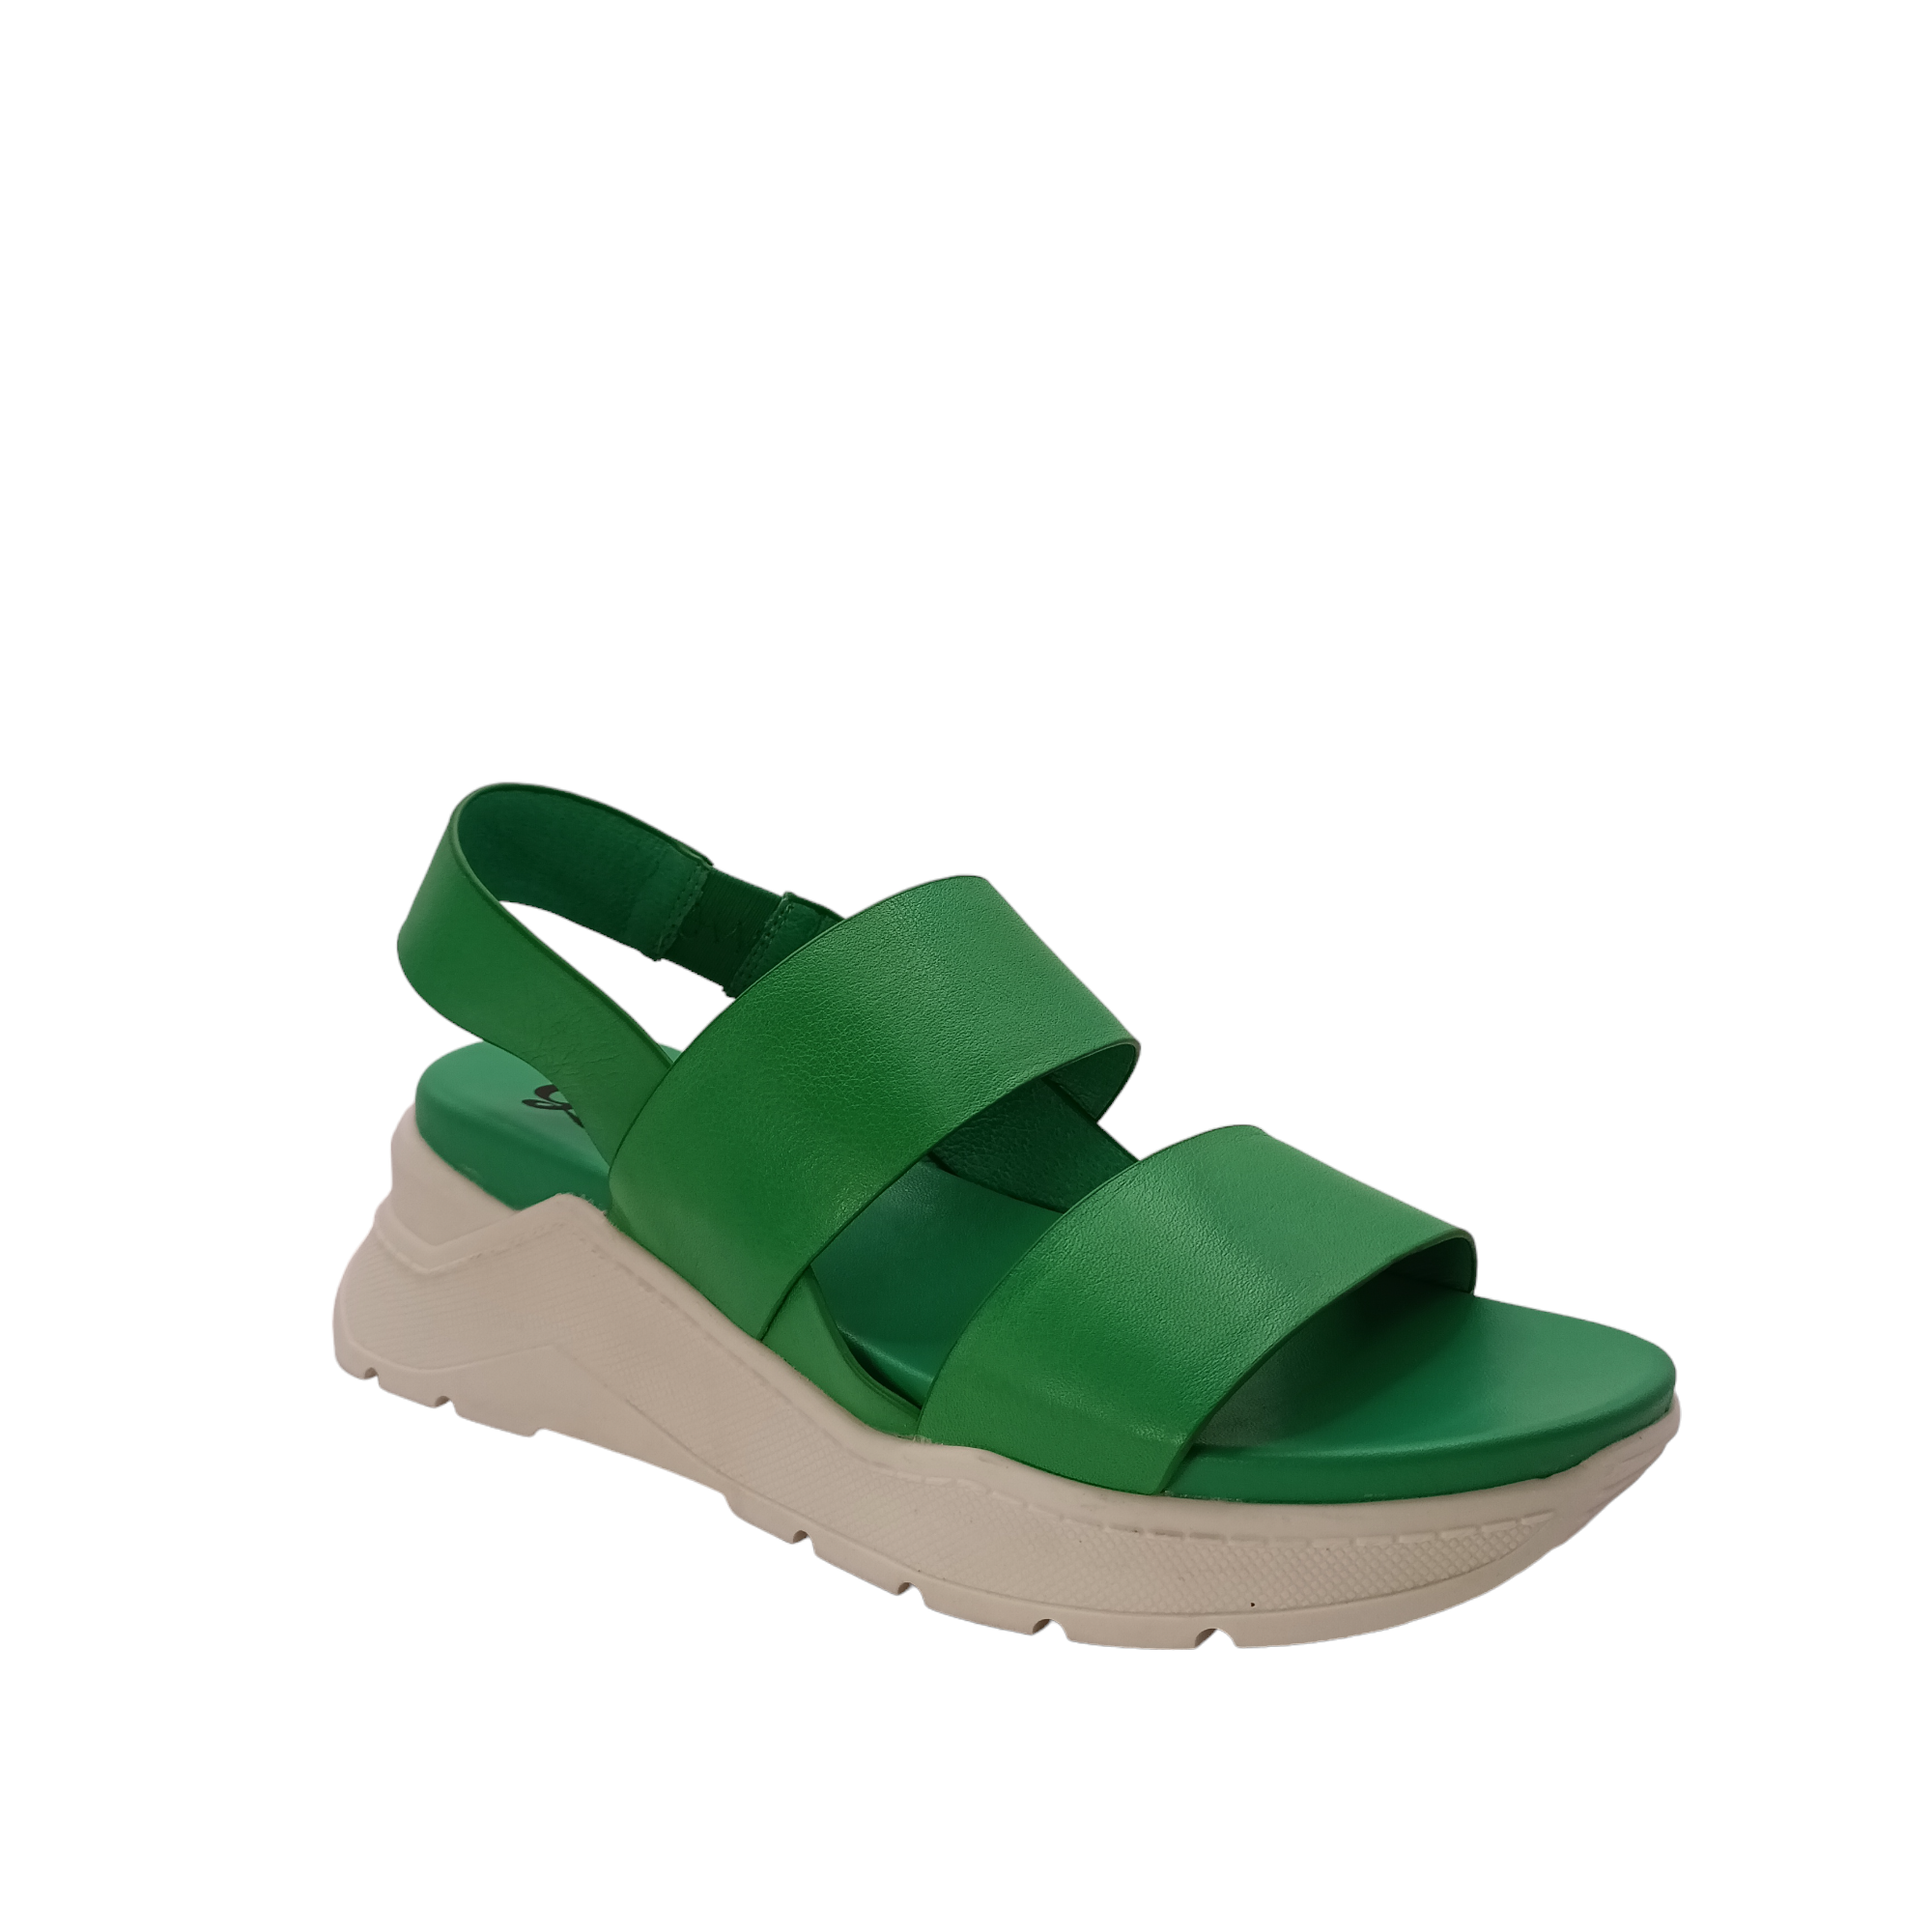 Force - shoe&amp;me - Gelato - Sandal - Platform, Sandals, Summer, Womens